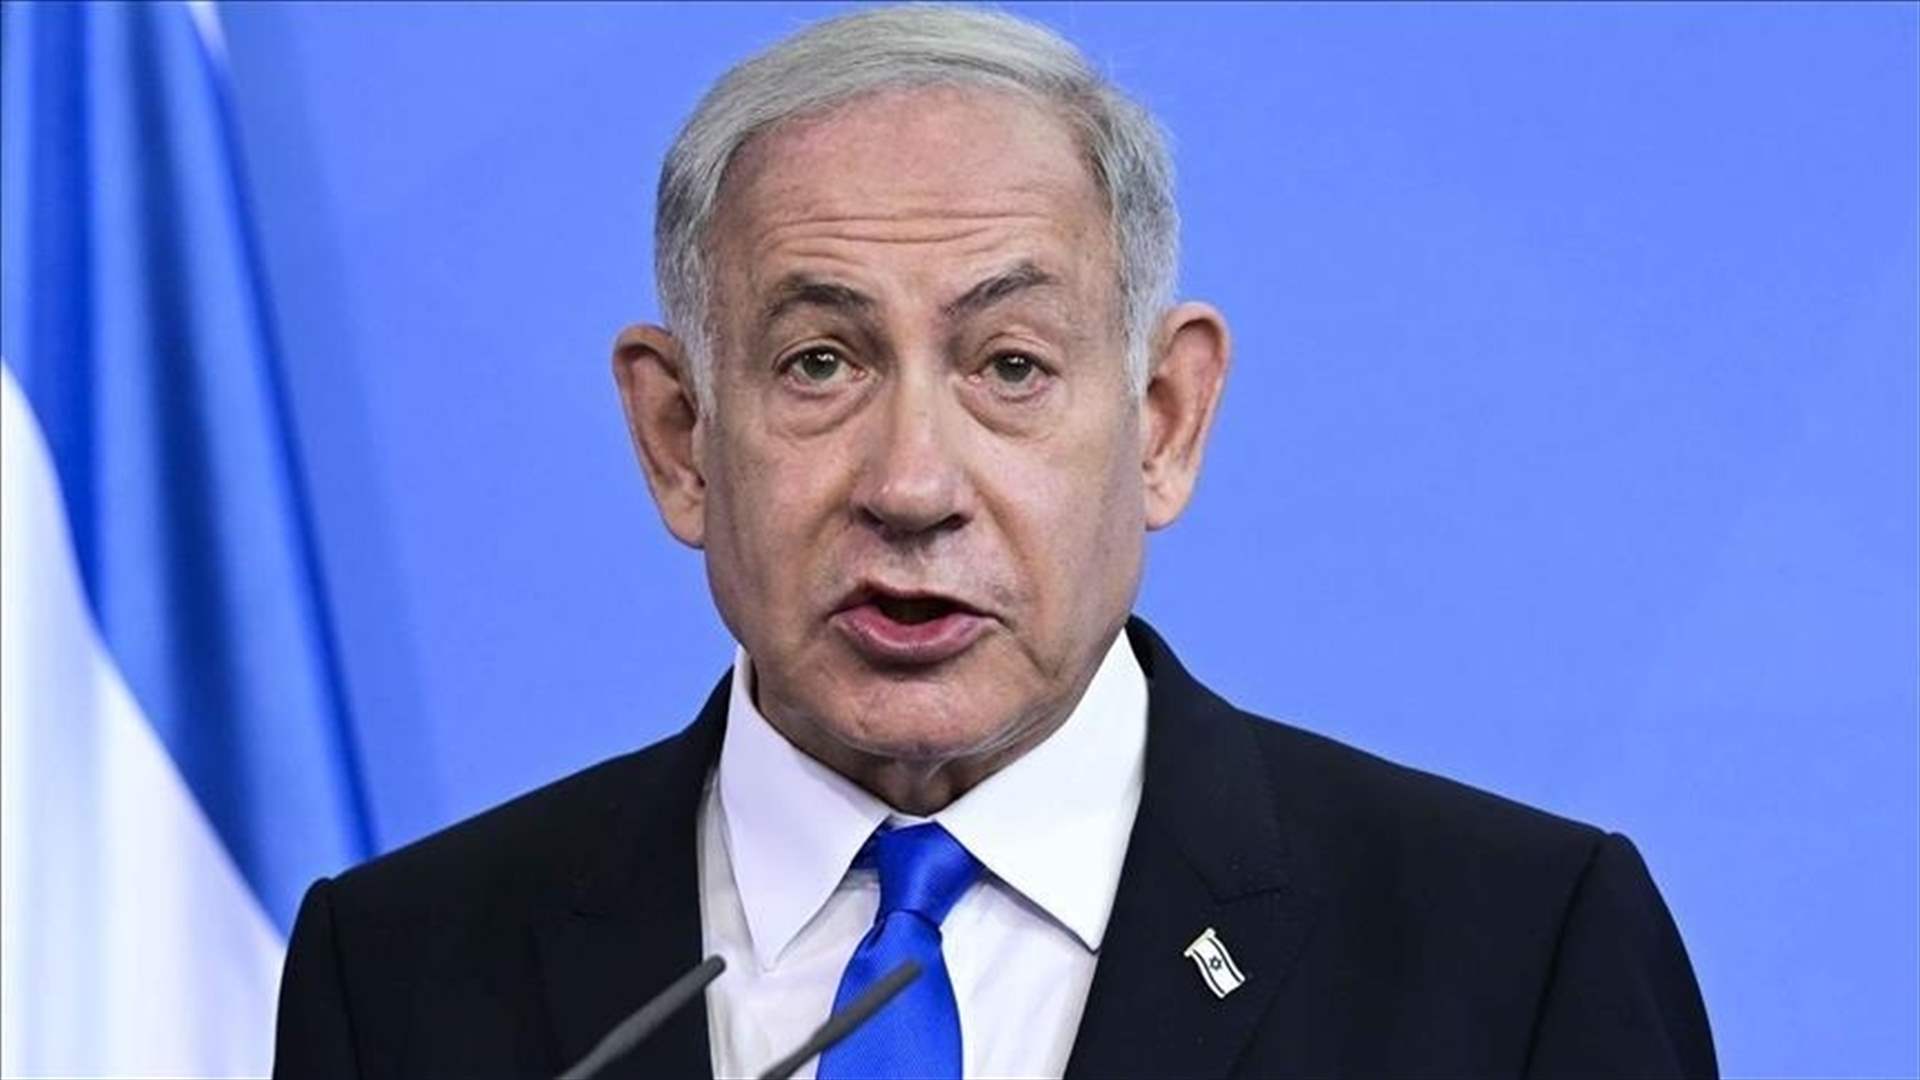 نتانياهو: مستوى عال جدًا من الاستعداد لأي سيناريو سواء دفاعيّ او هجوميّ